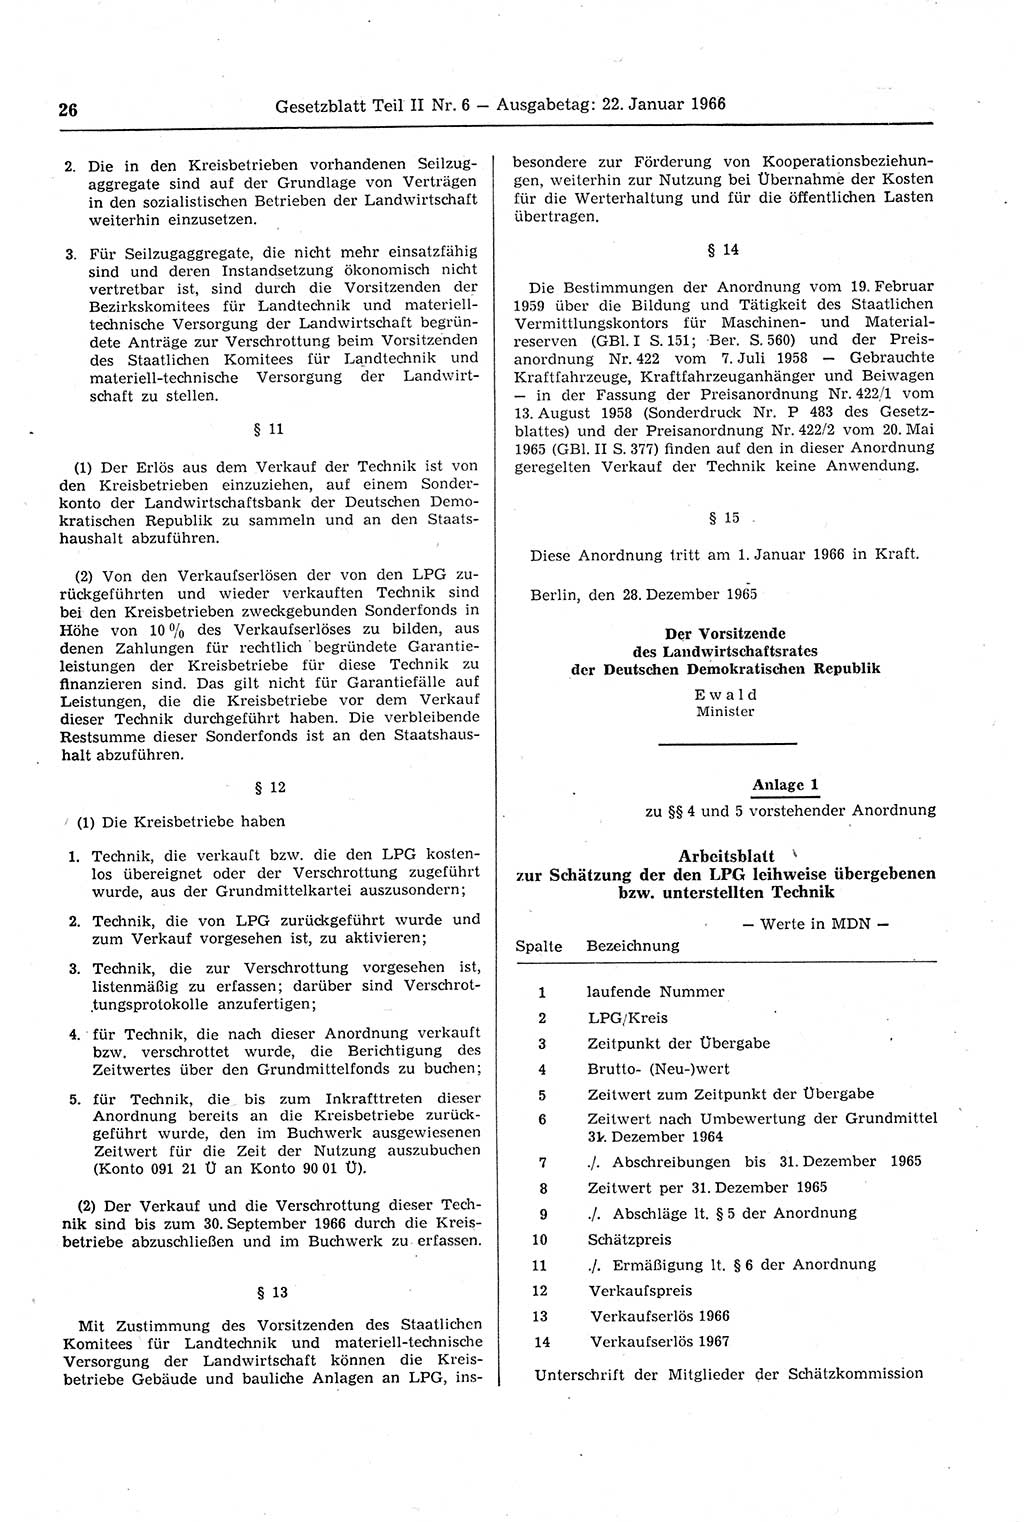 Gesetzblatt (GBl.) der Deutschen Demokratischen Republik (DDR) Teil ⅠⅠ 1966, Seite 26 (GBl. DDR ⅠⅠ 1966, S. 26)